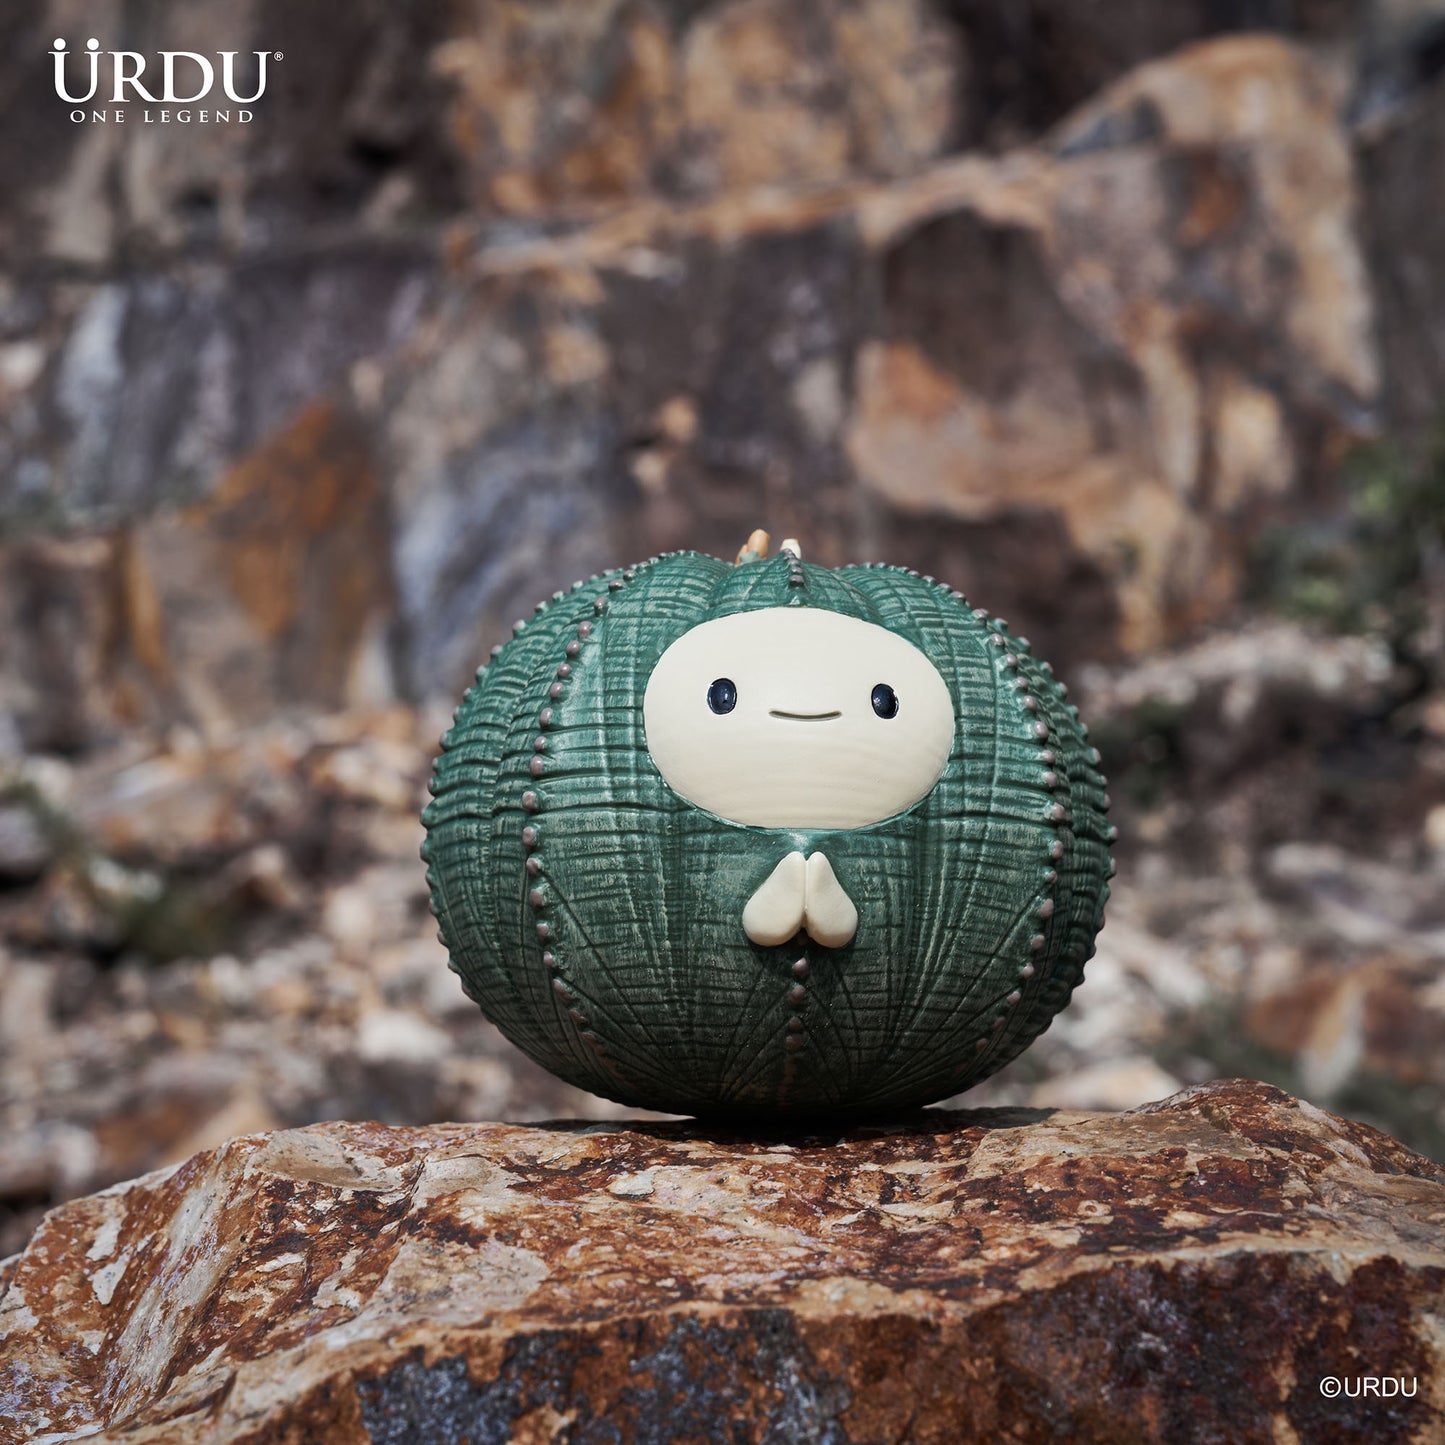 
                  
                    URDU Plant Alien Figure Series - Bally
                  
                